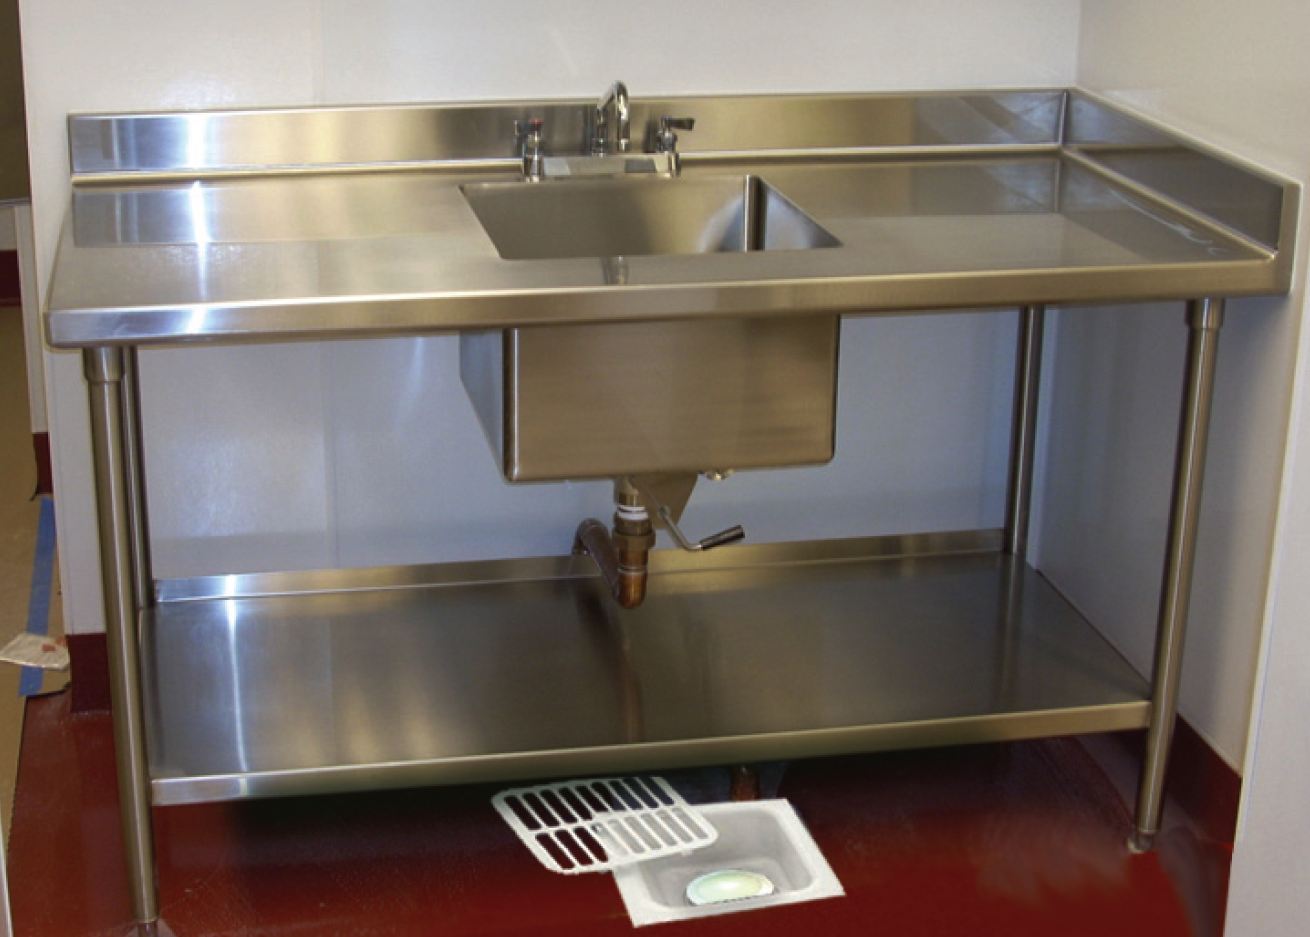 floor sink in commercial kitchen